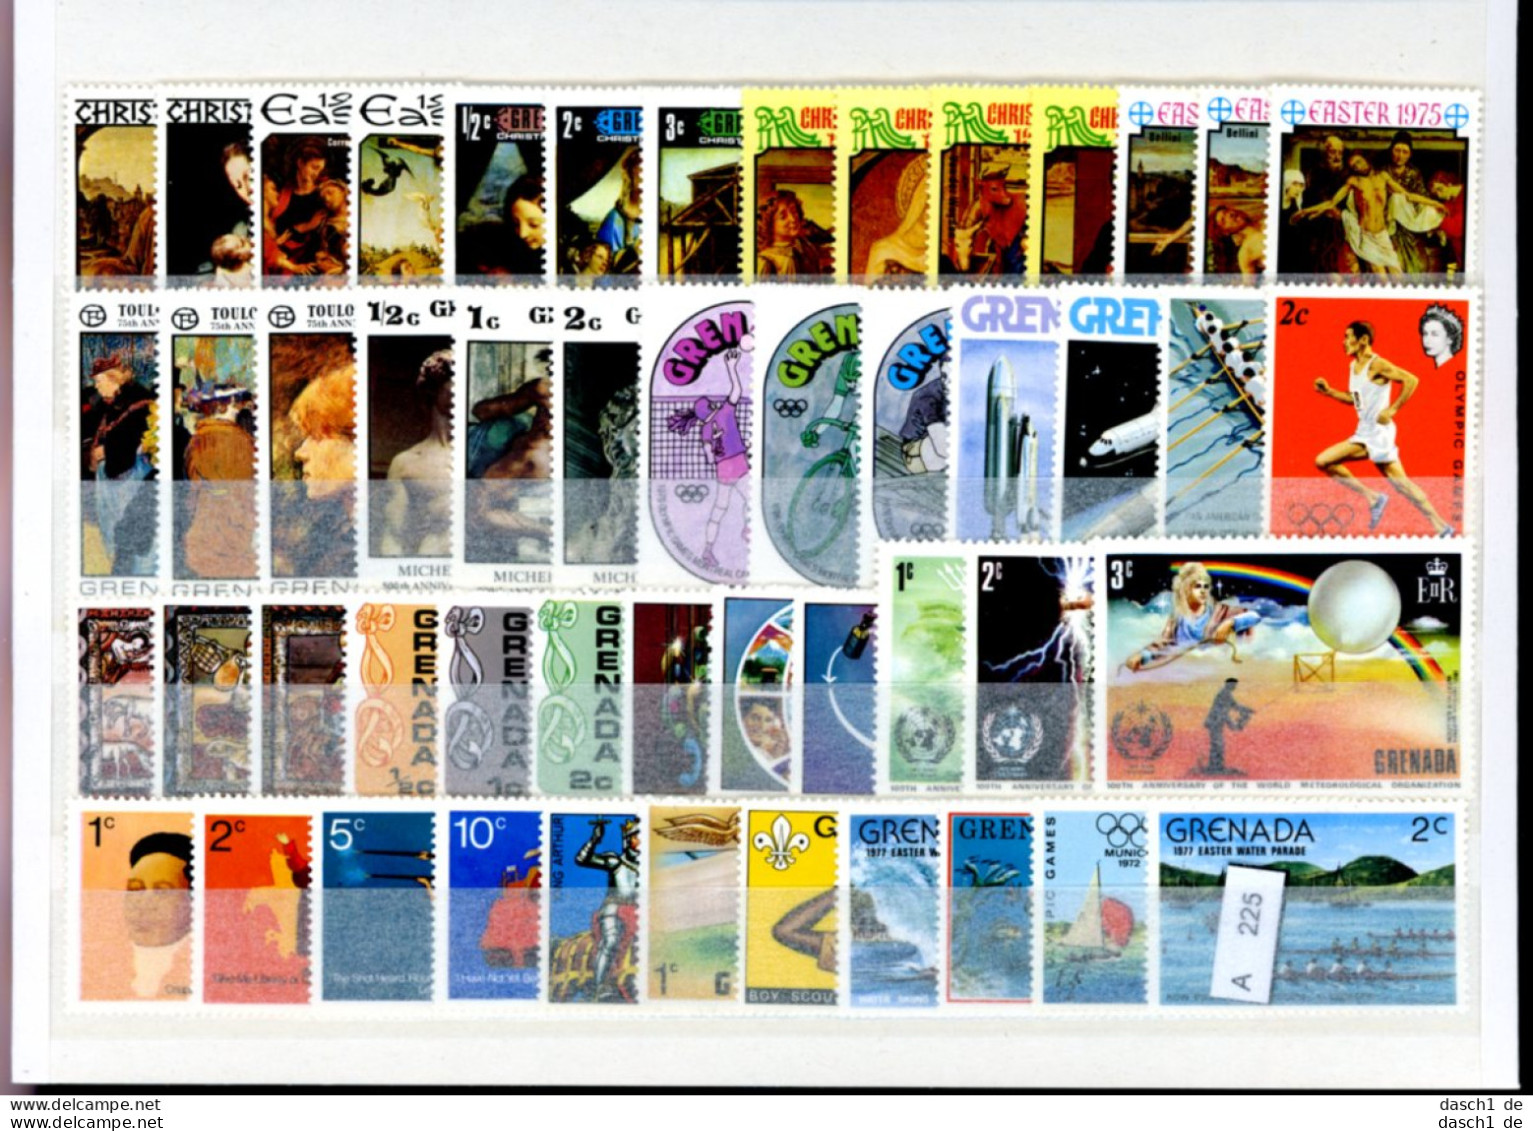 Slg. Postfrische Marken, Xx, 4 Lose Auf A5-Karten Dichtgesteckt, Schwerpunkt Motivmarken, Grenada - Grenada (1974-...)